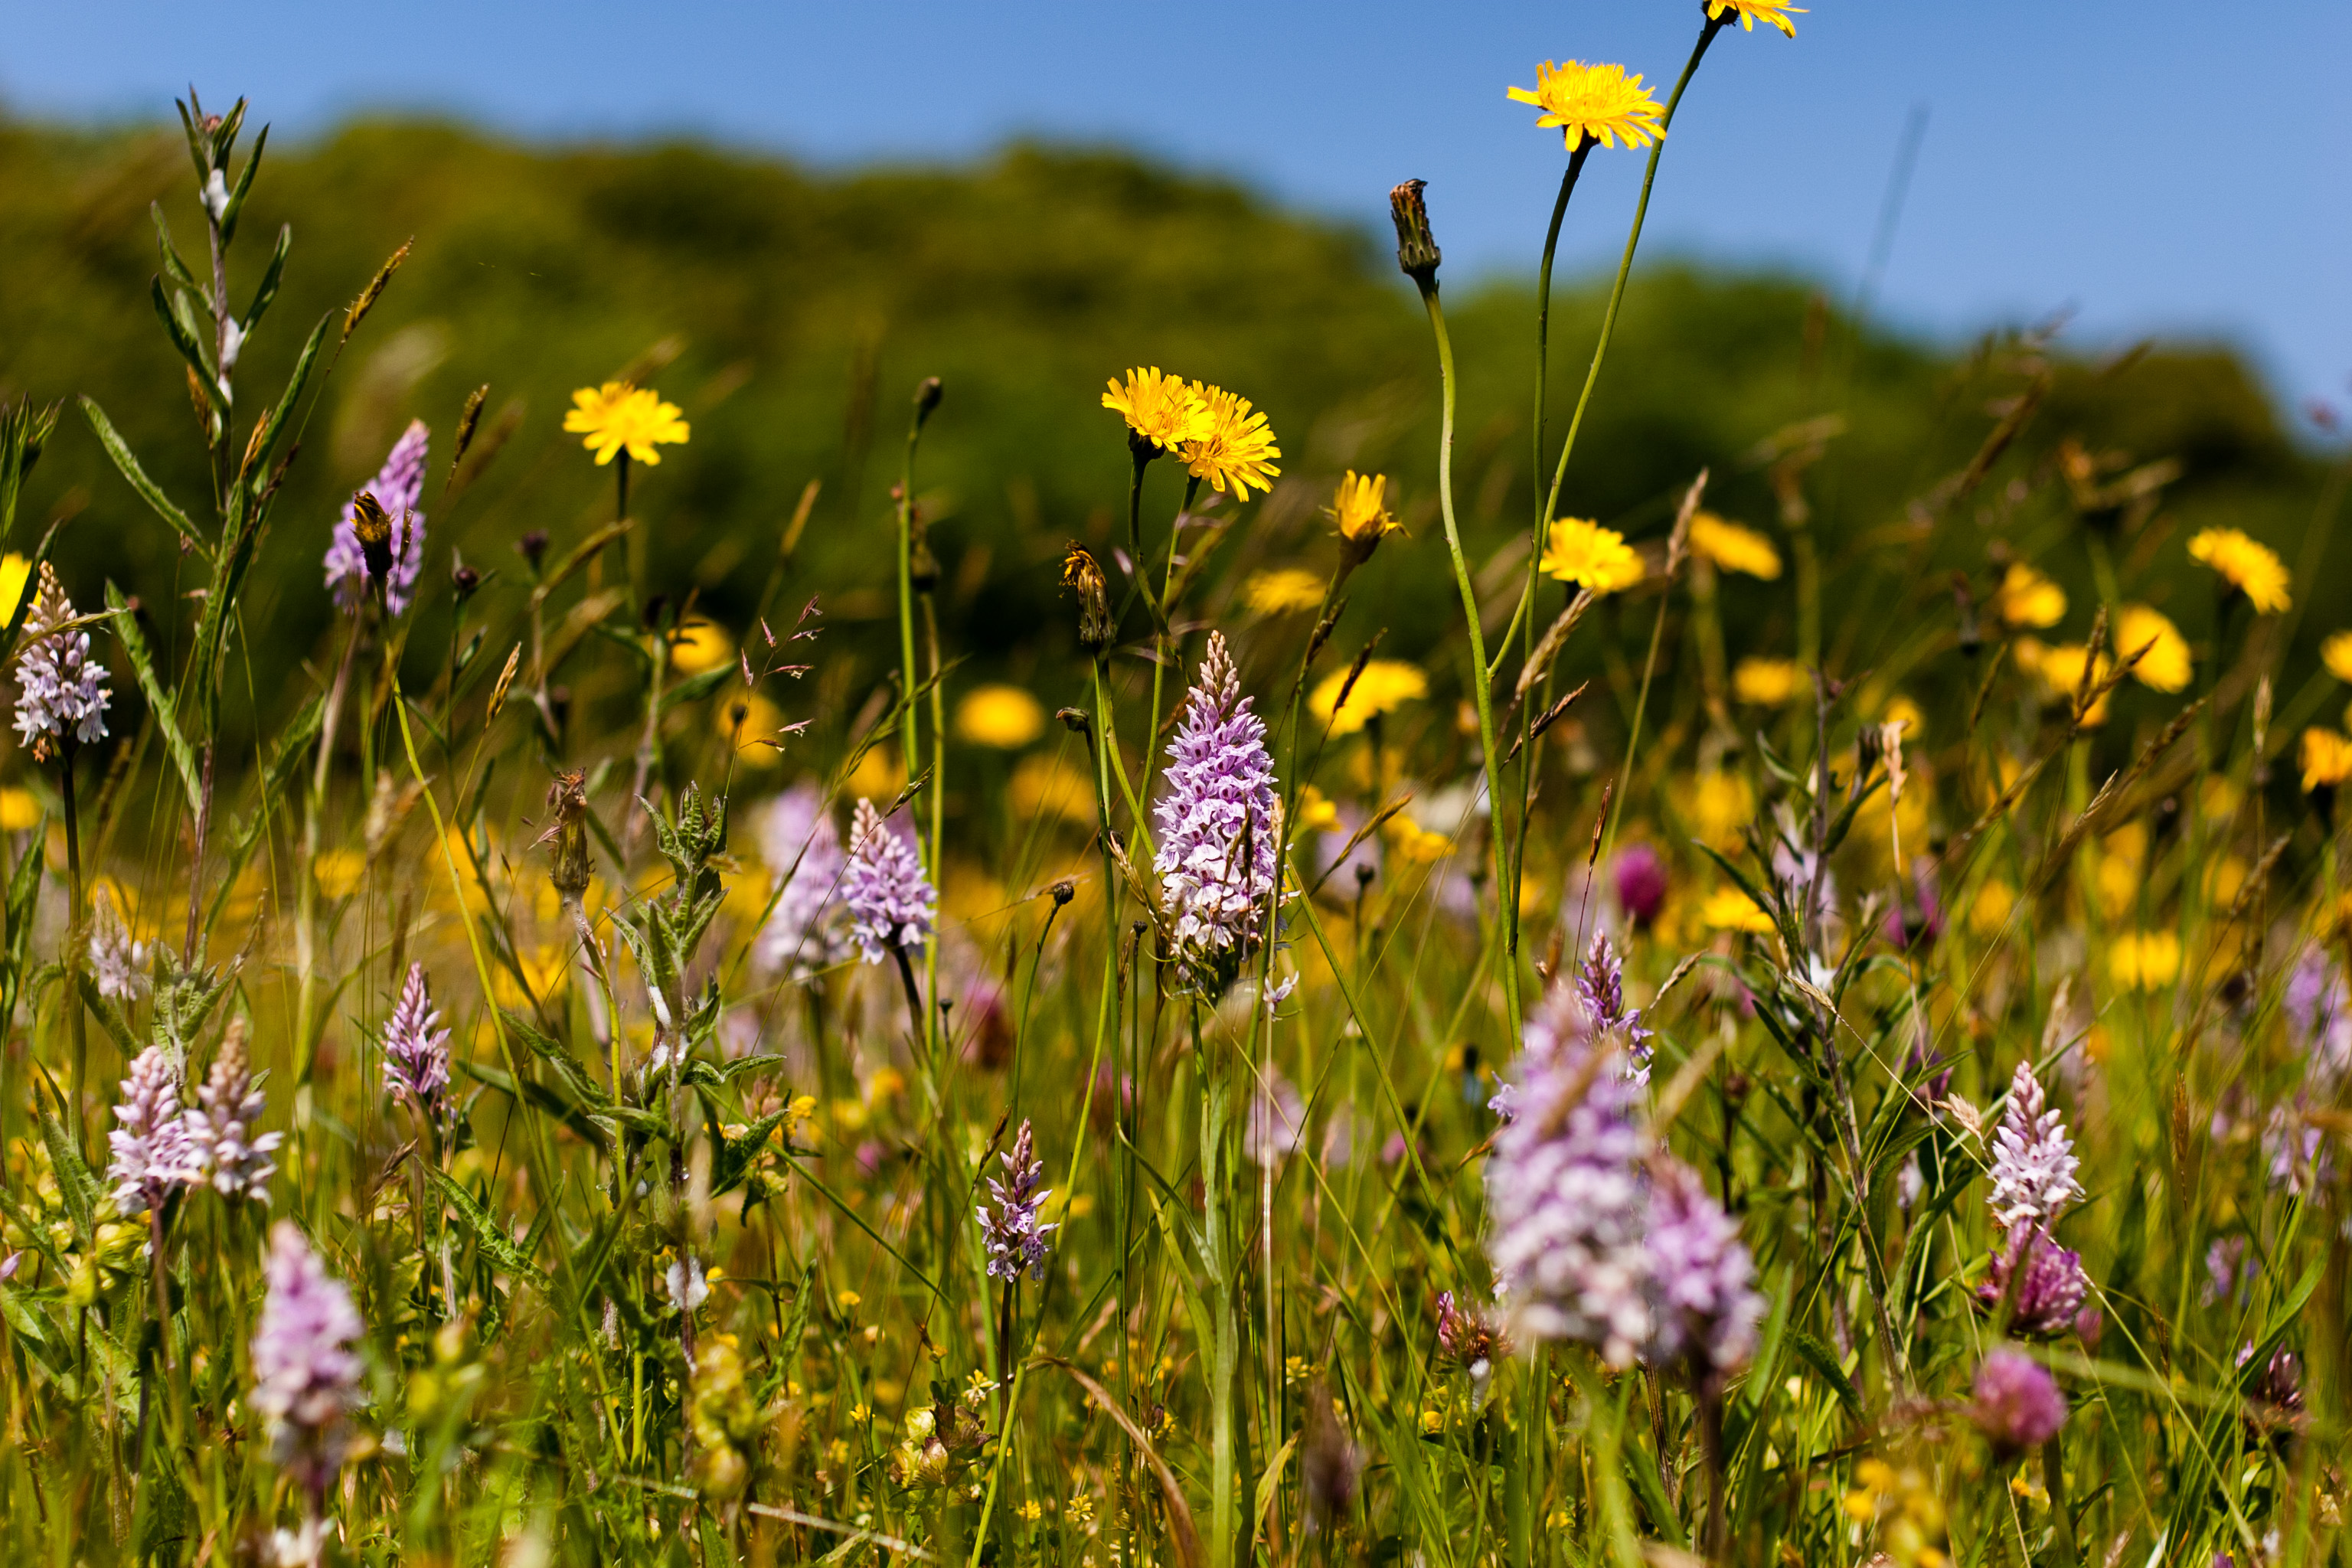 Worcestershire wildflower meadow image credit Paul Lane